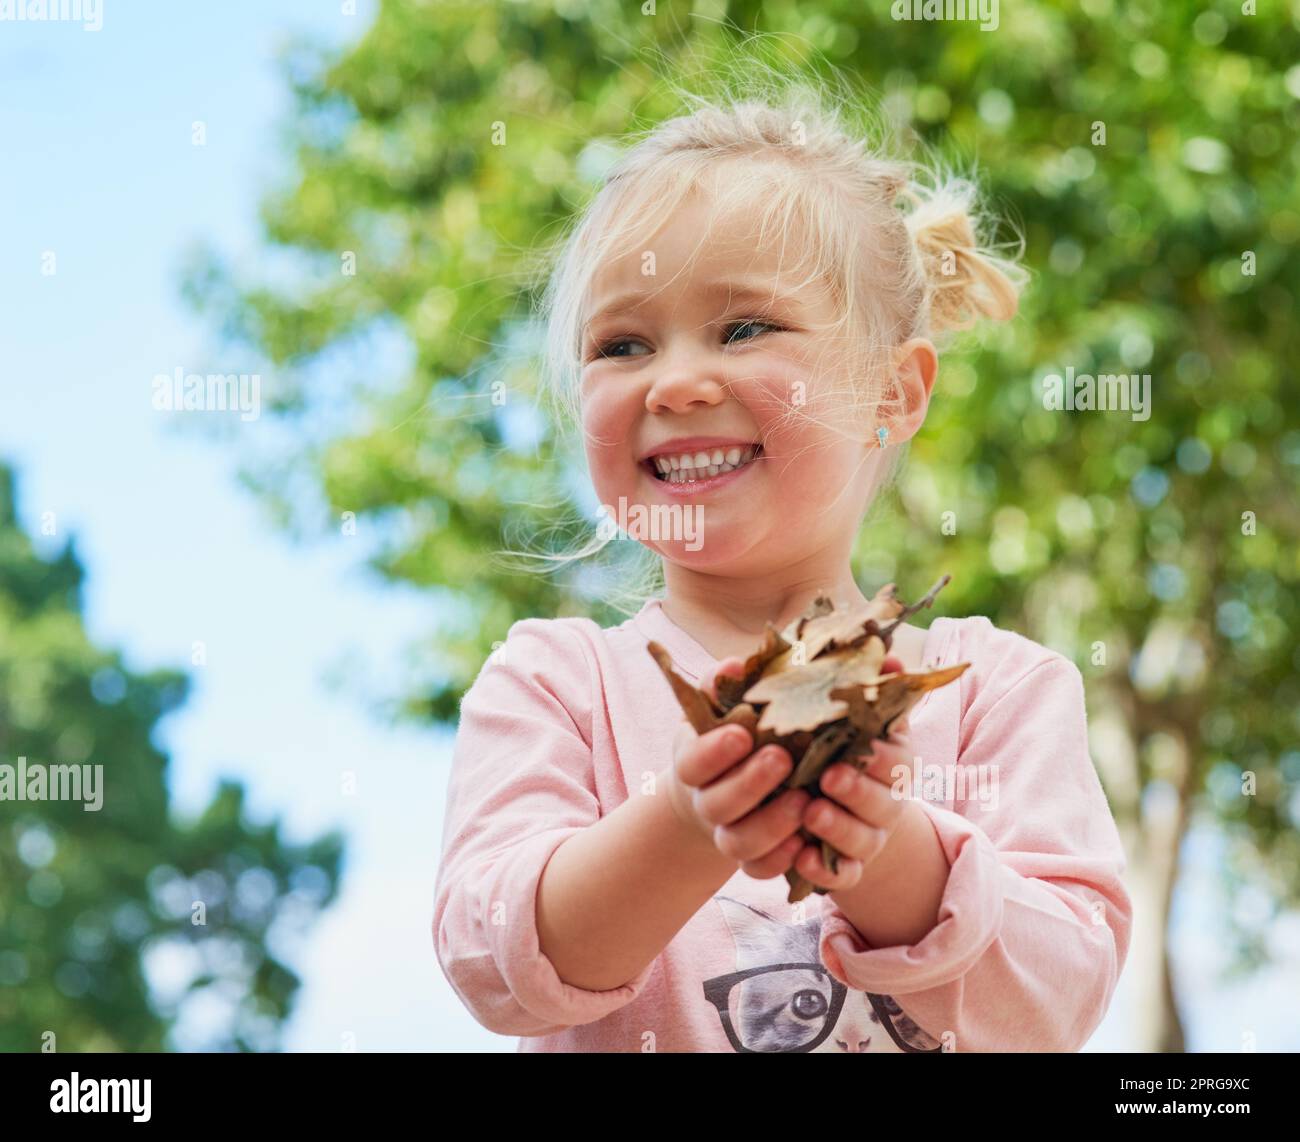 Finden Spaß in den kleinen Dingen. Ein nettes kleines Mädchen hält Blätter beim Spielen draußen. Stockfoto